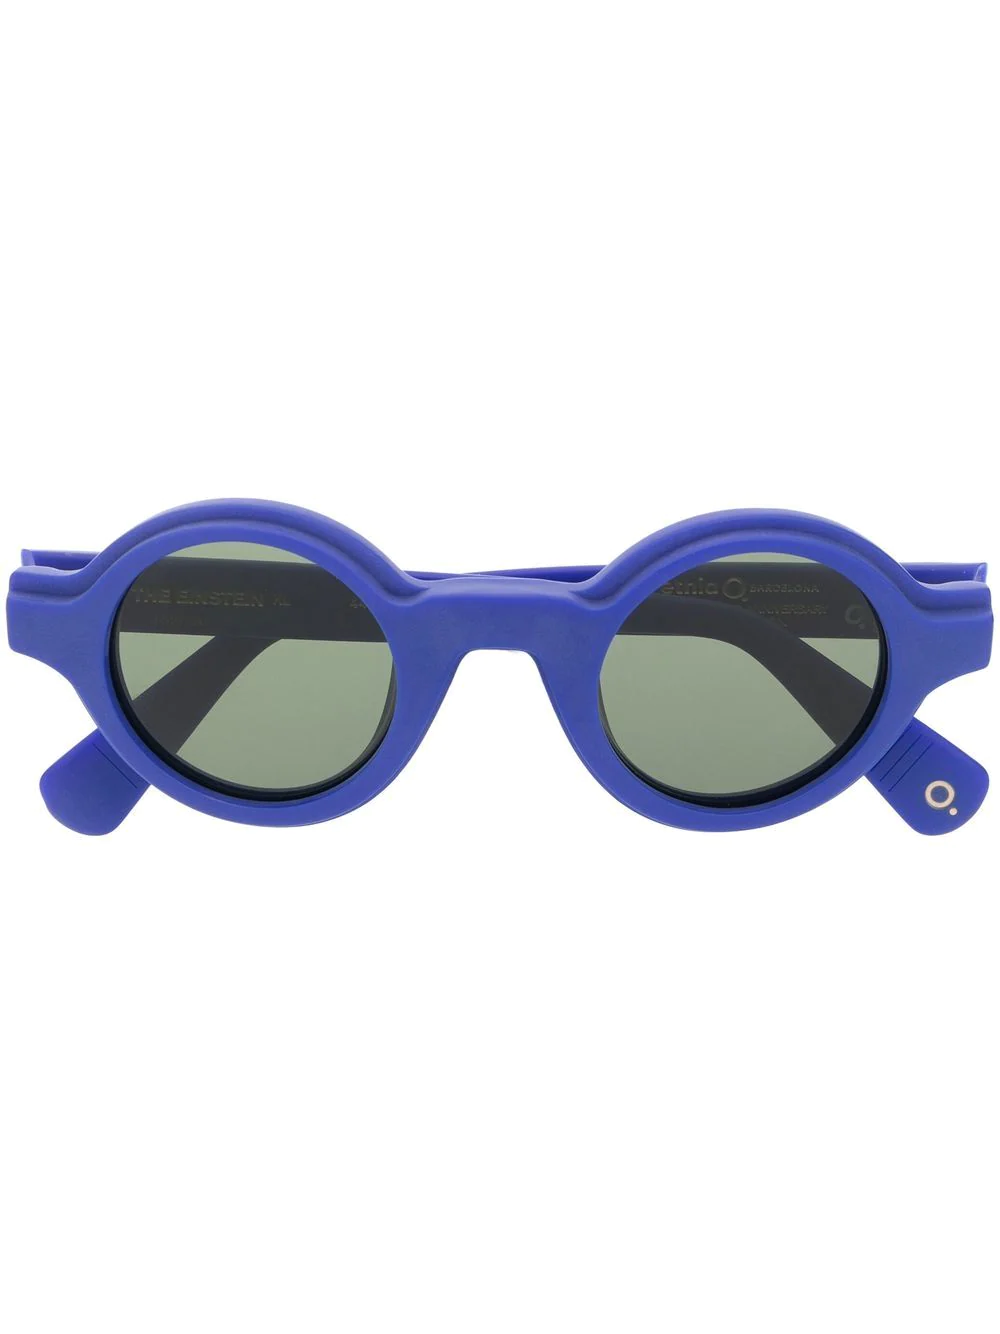 Etnia Barcelona round-frame sunglasses